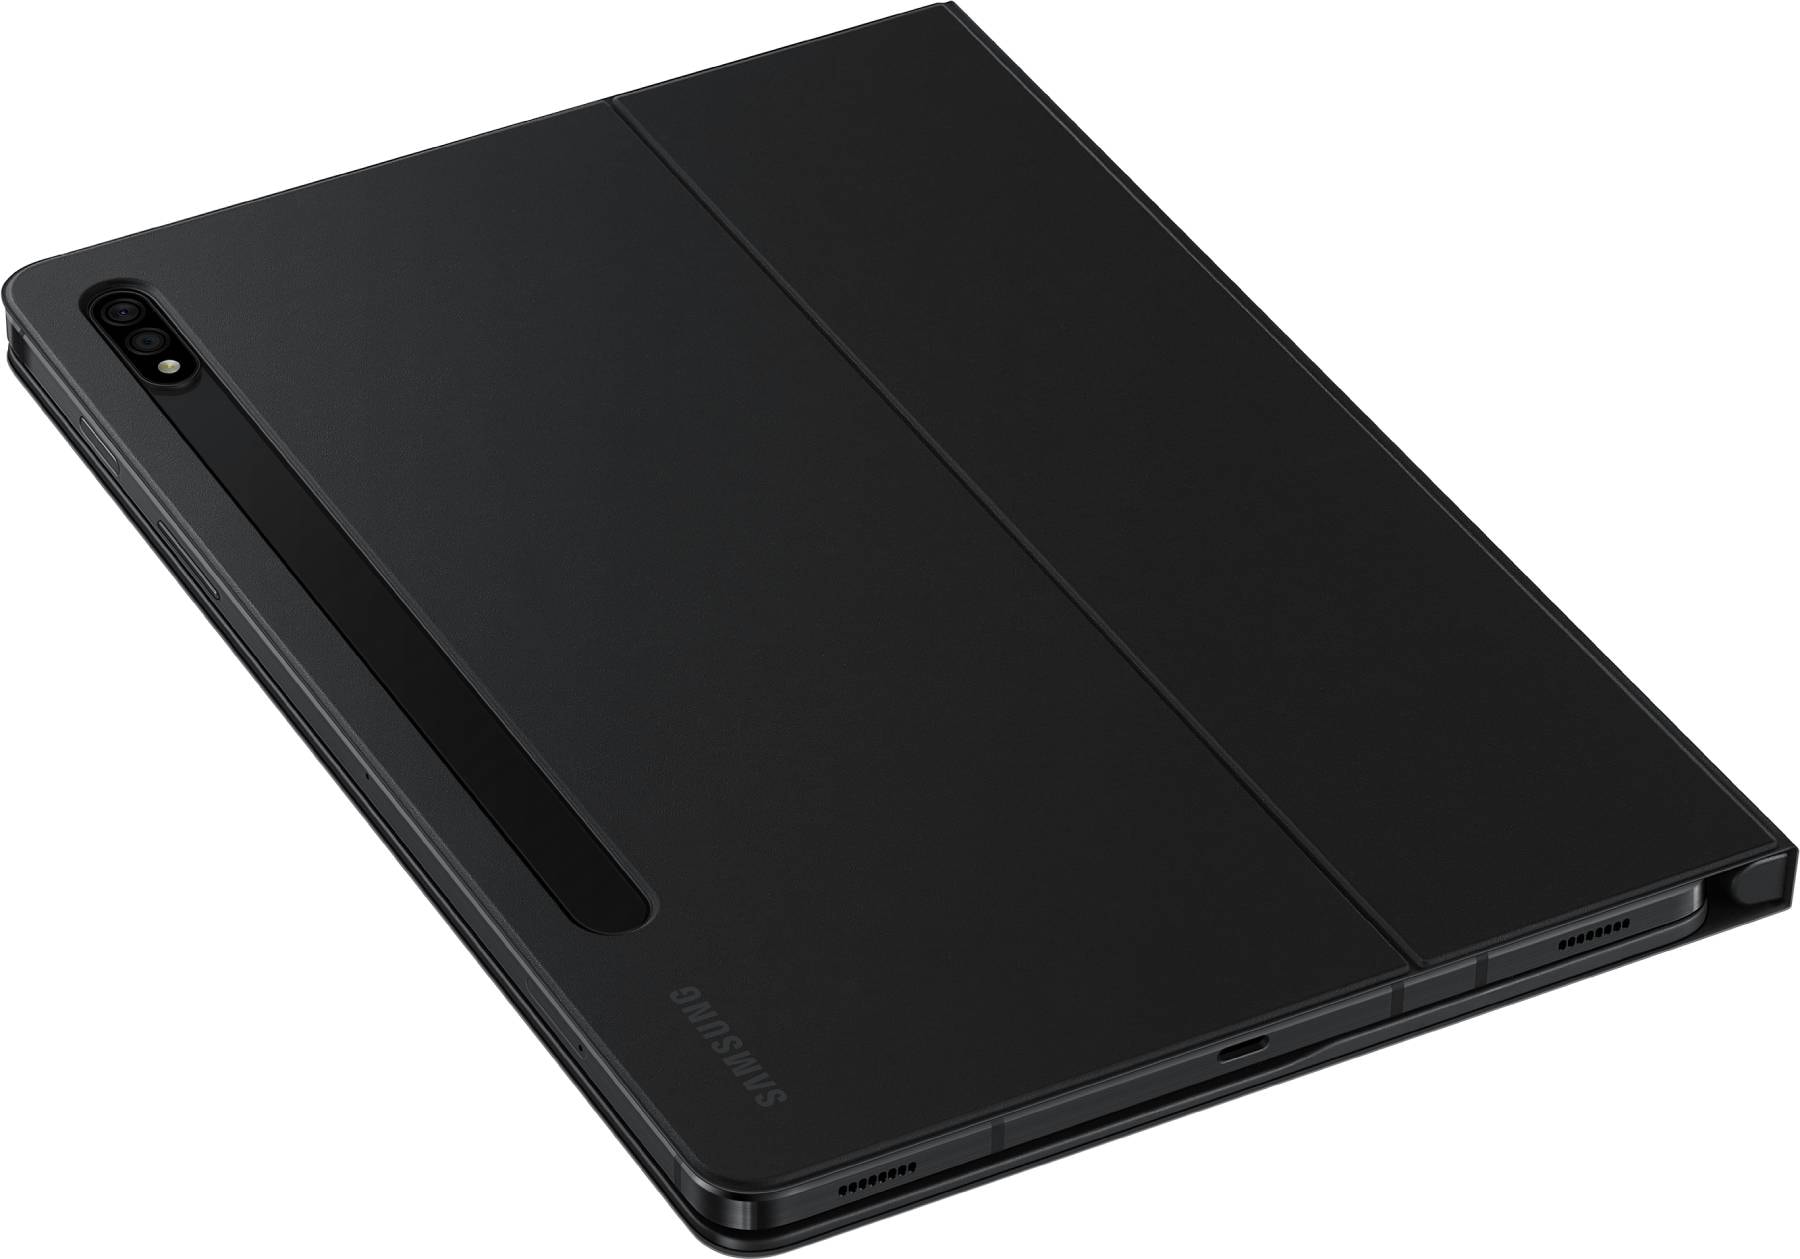 Samsung - Etui pour Tablette avec clavier pour tablette S7 ou S8